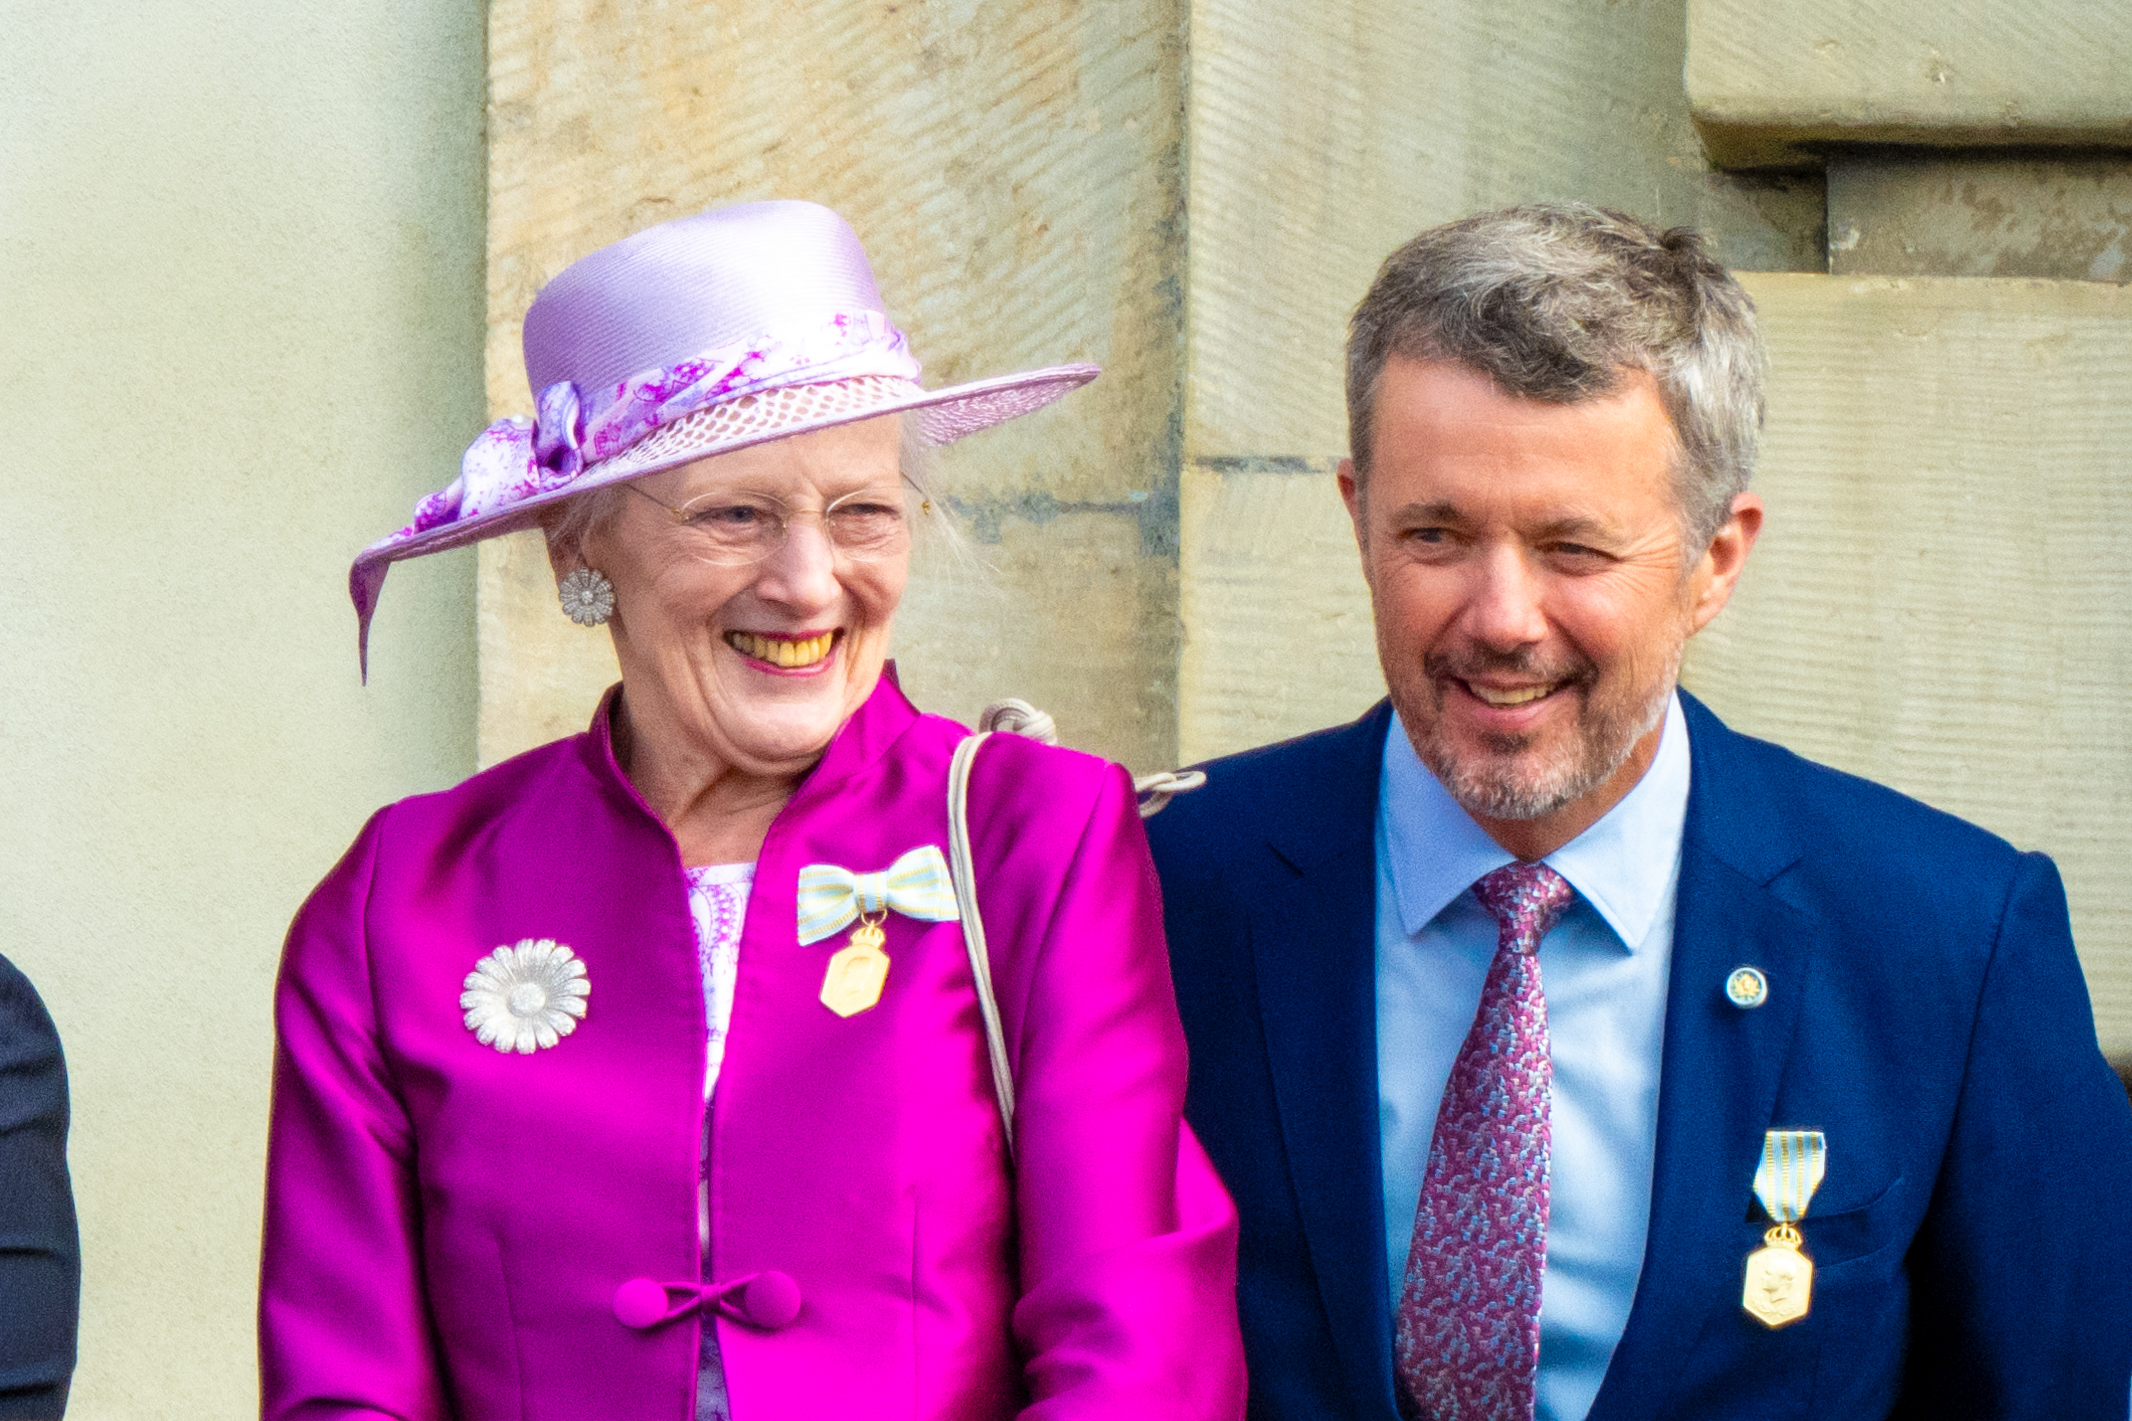 Königin Margrethe II. wird nach 52 Jahren als dänische Monarchin abdanken